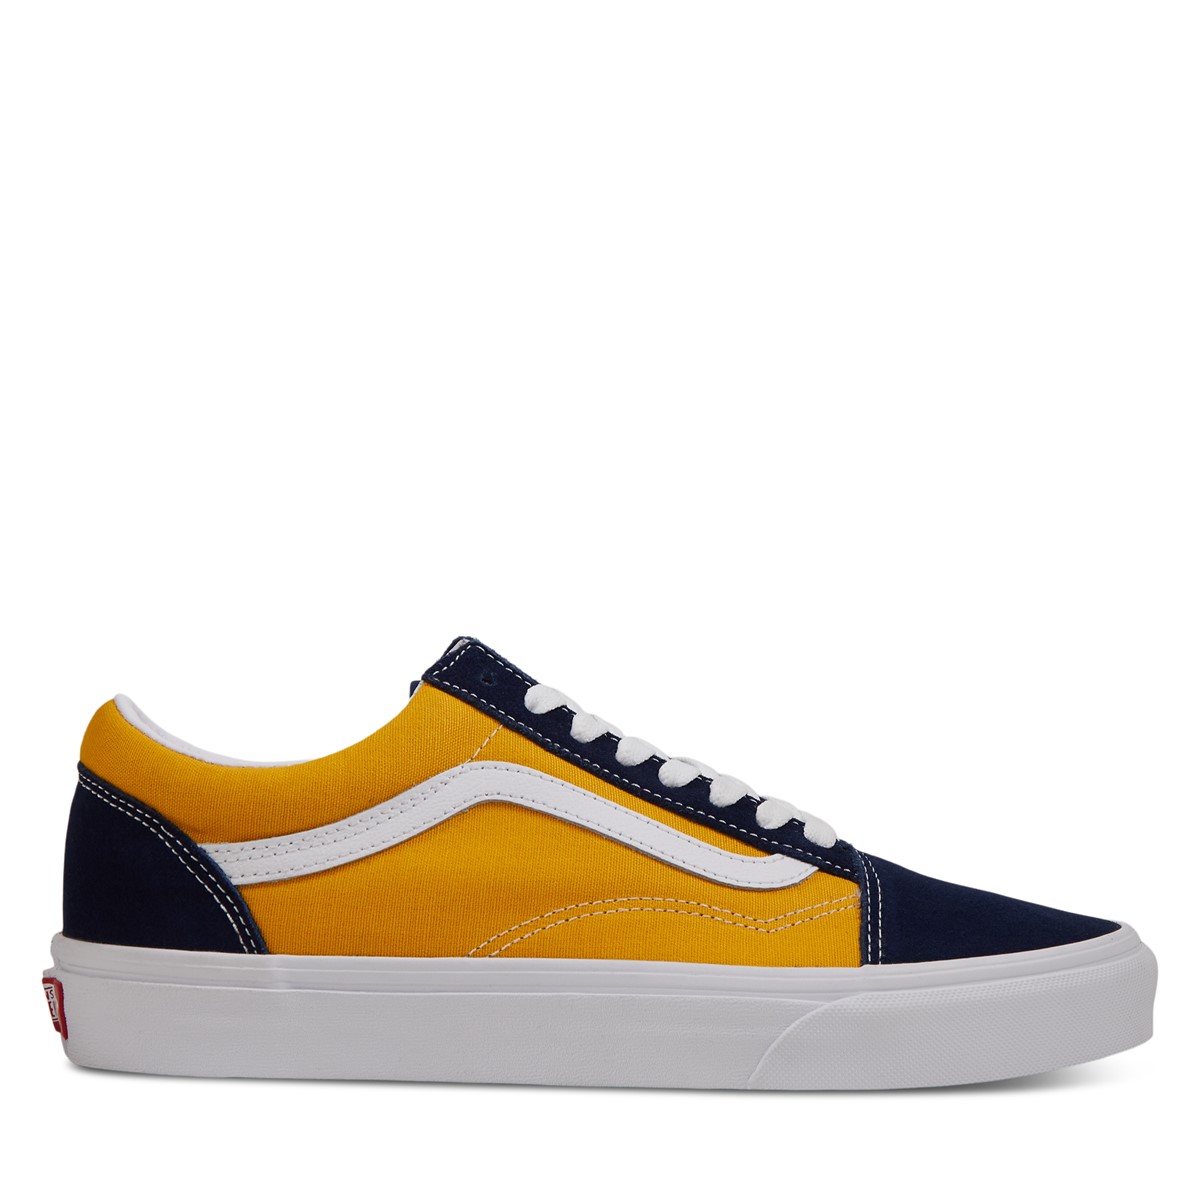 Old Skool Sneakers in Navy Blue/Yellow 